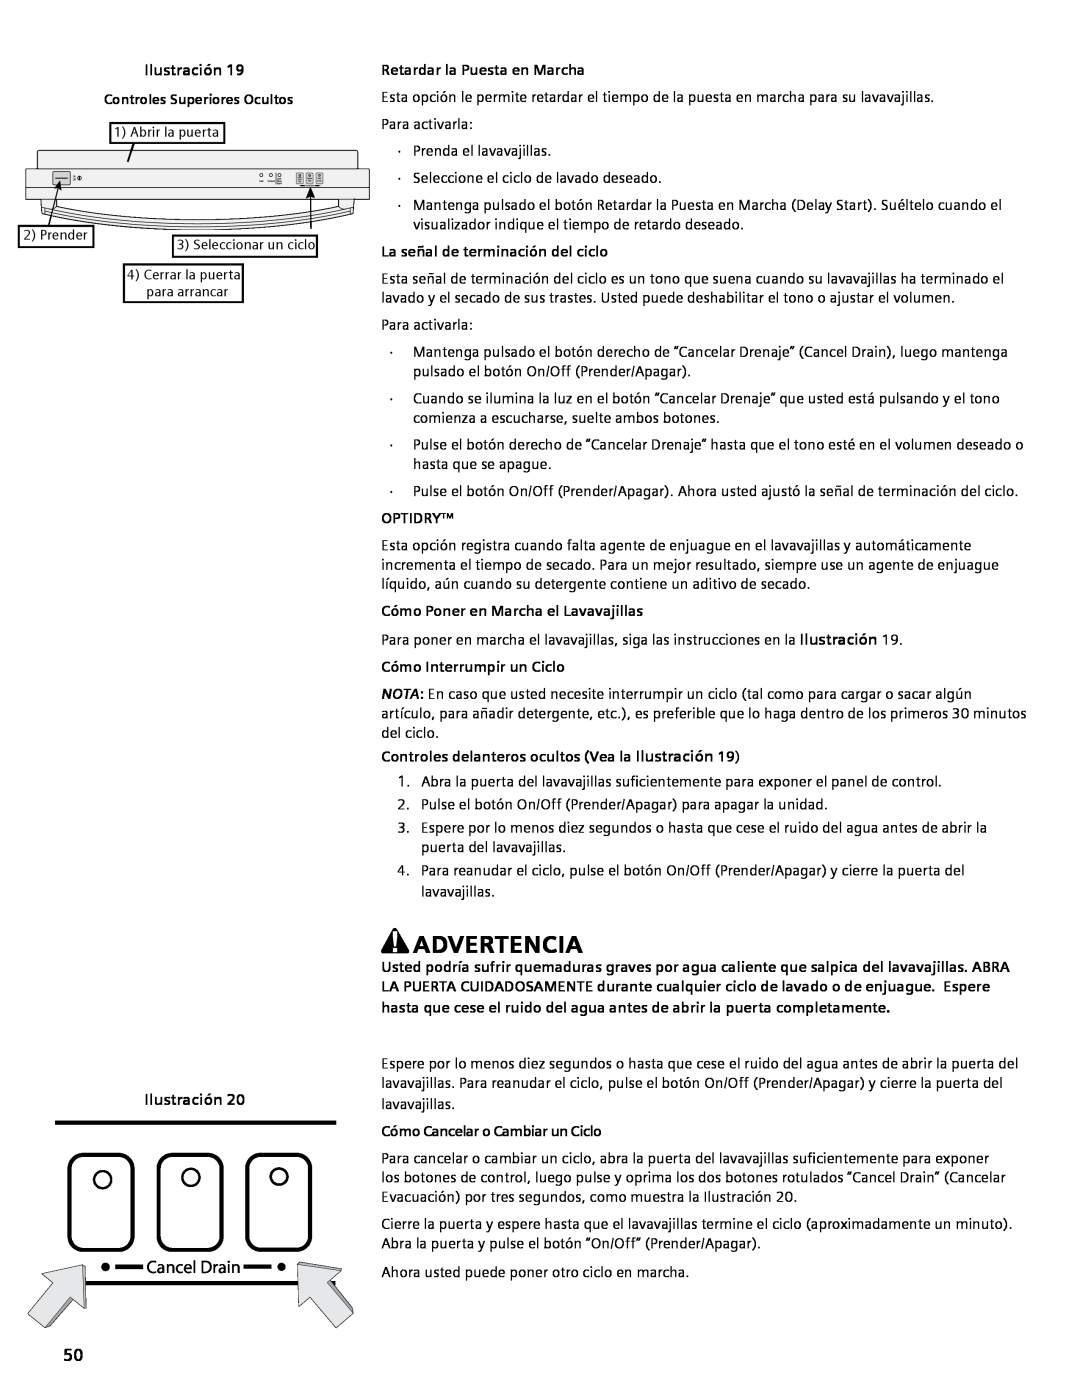 Bosch Appliances SGV45E03UC manual Advertencia, Cancel Drain, Ilustración, Controles Superiores Ocultos, Optidry 